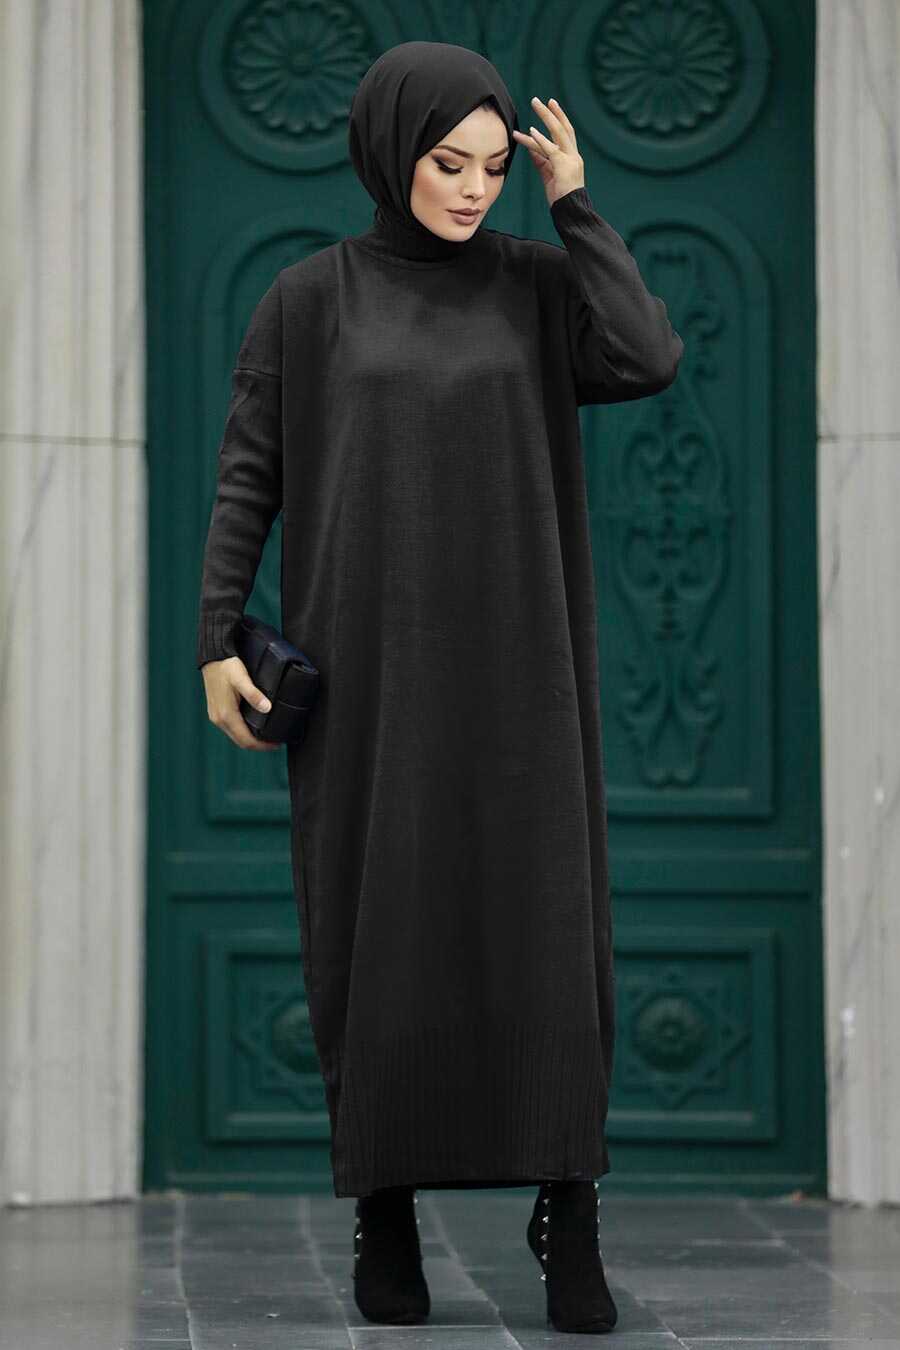 Neva Style - Black Long Dress for Muslim Ladies Knitwear Dress 3409S